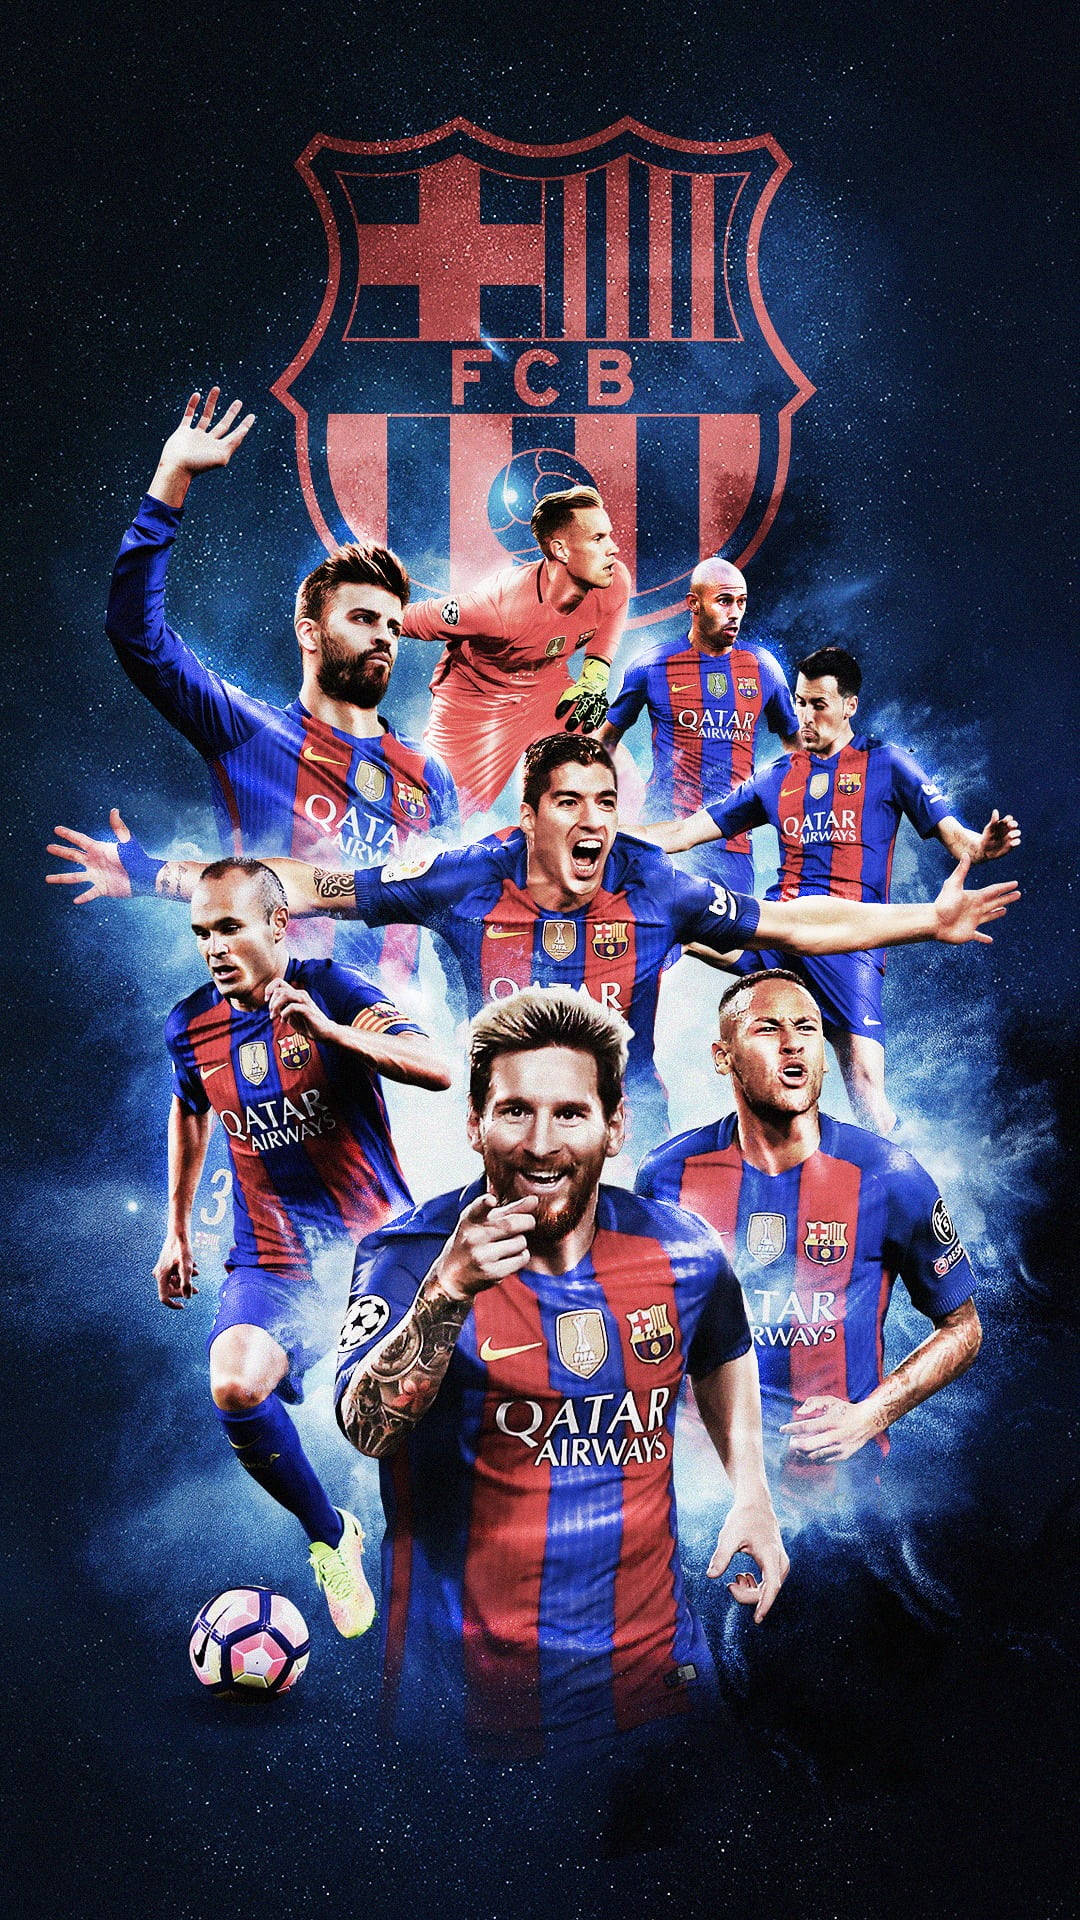 La Liga Fc Barcelona Art Background